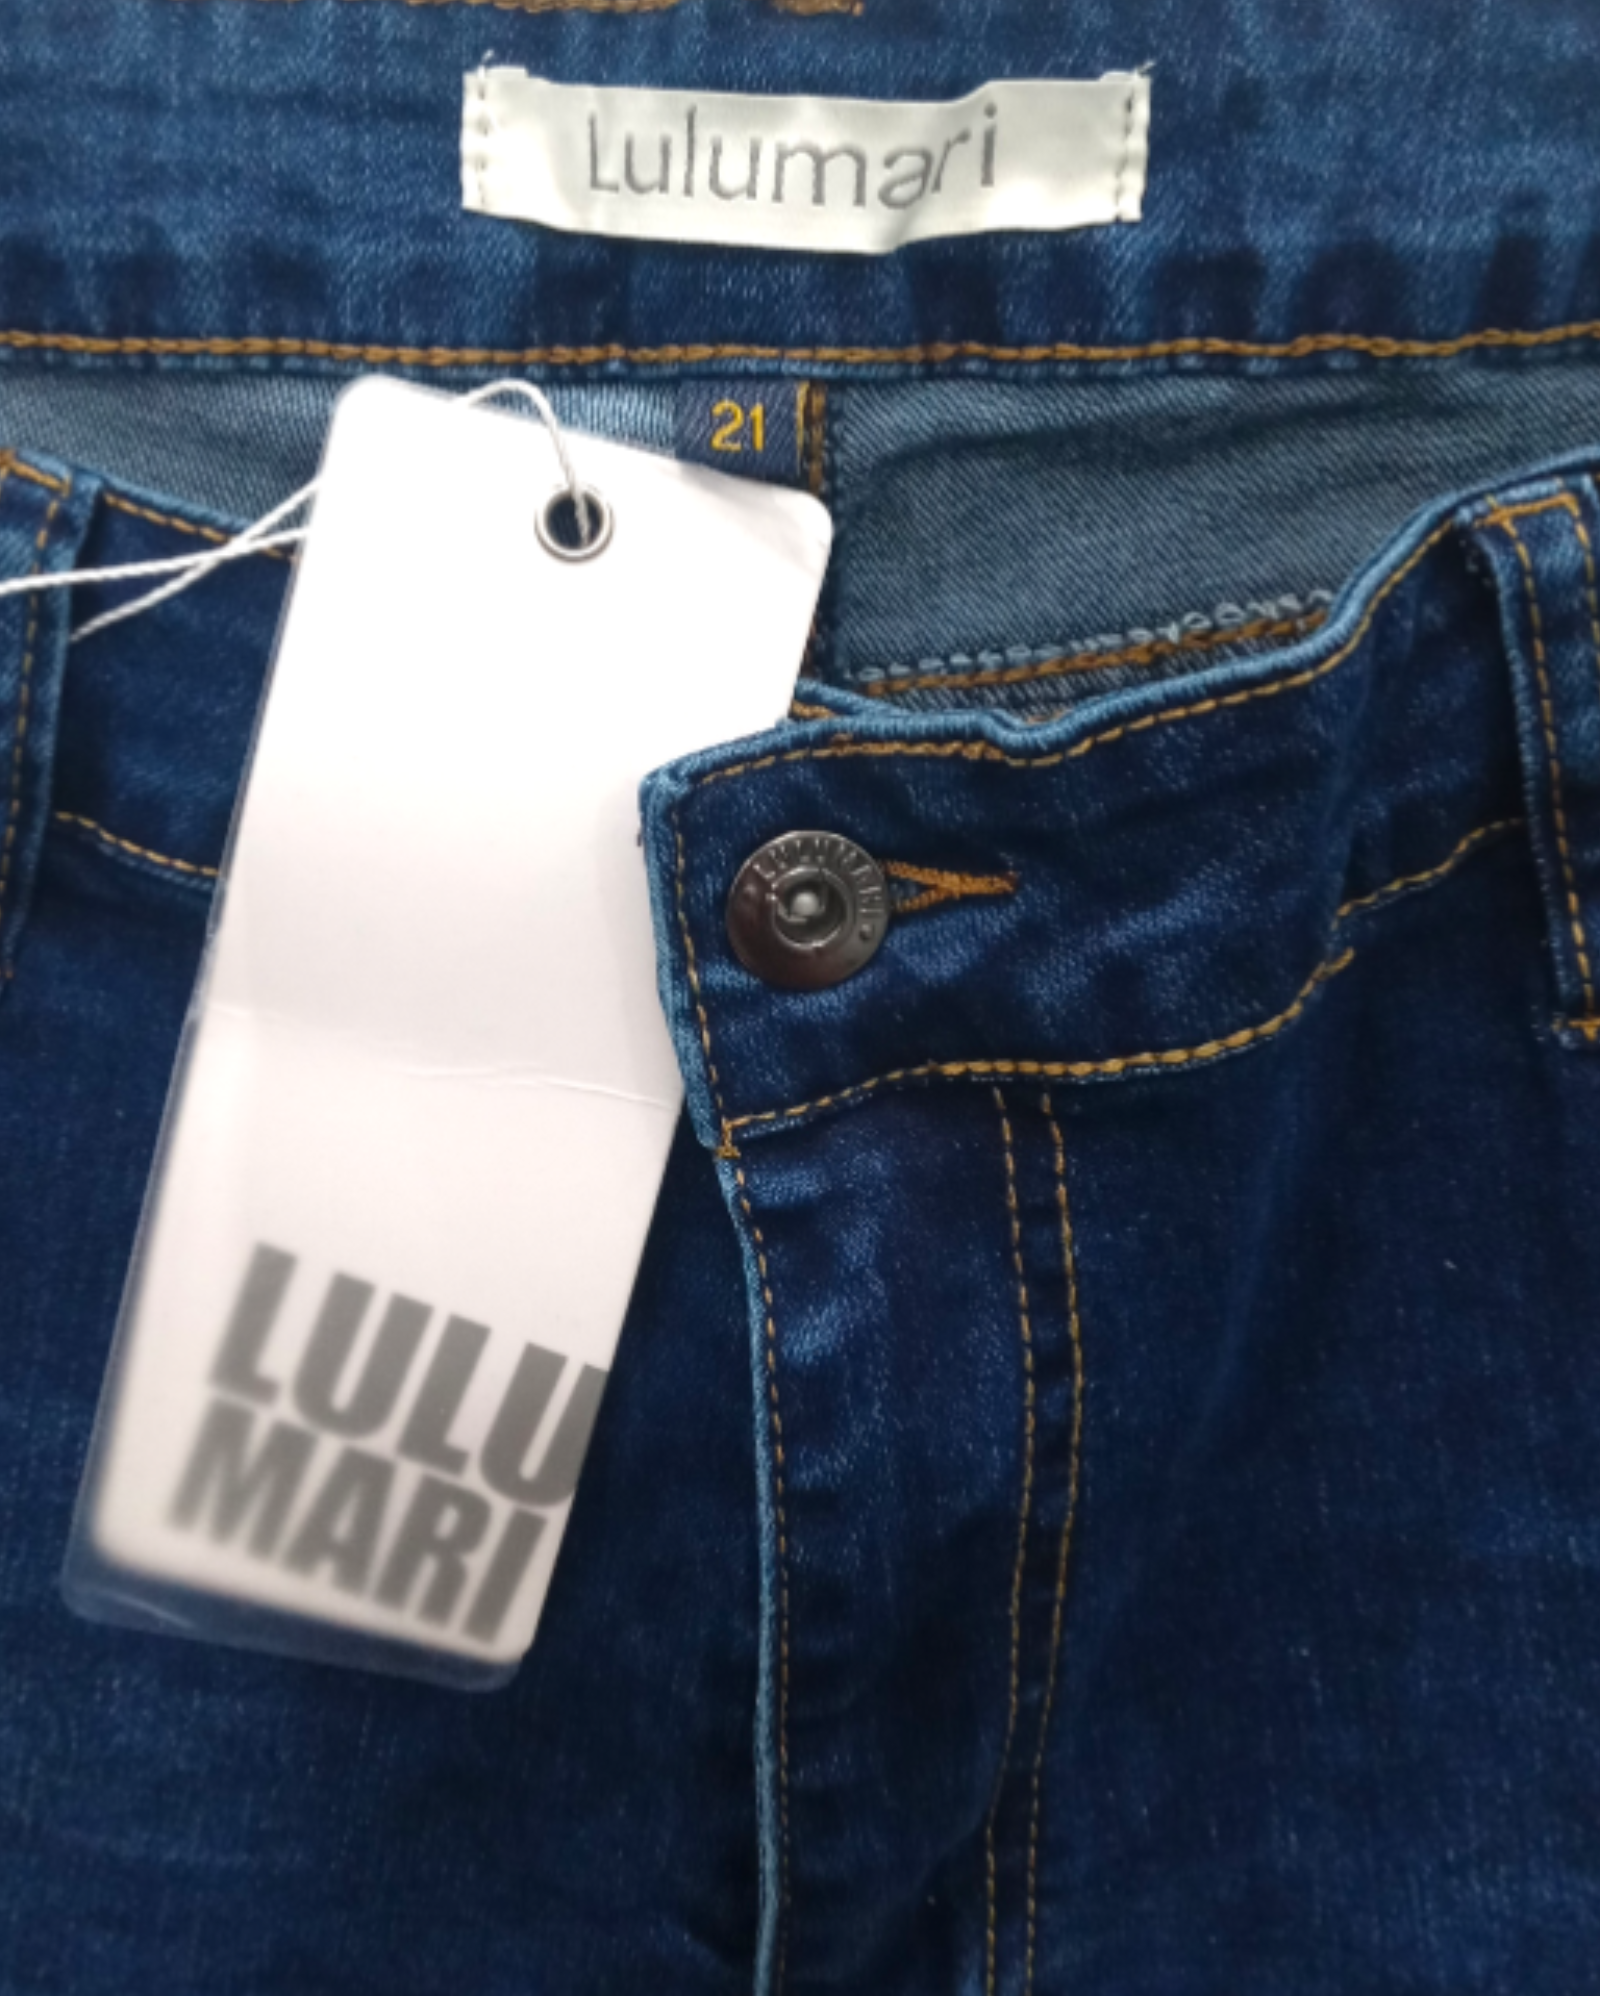 Jeans Skinny Lulumari 3